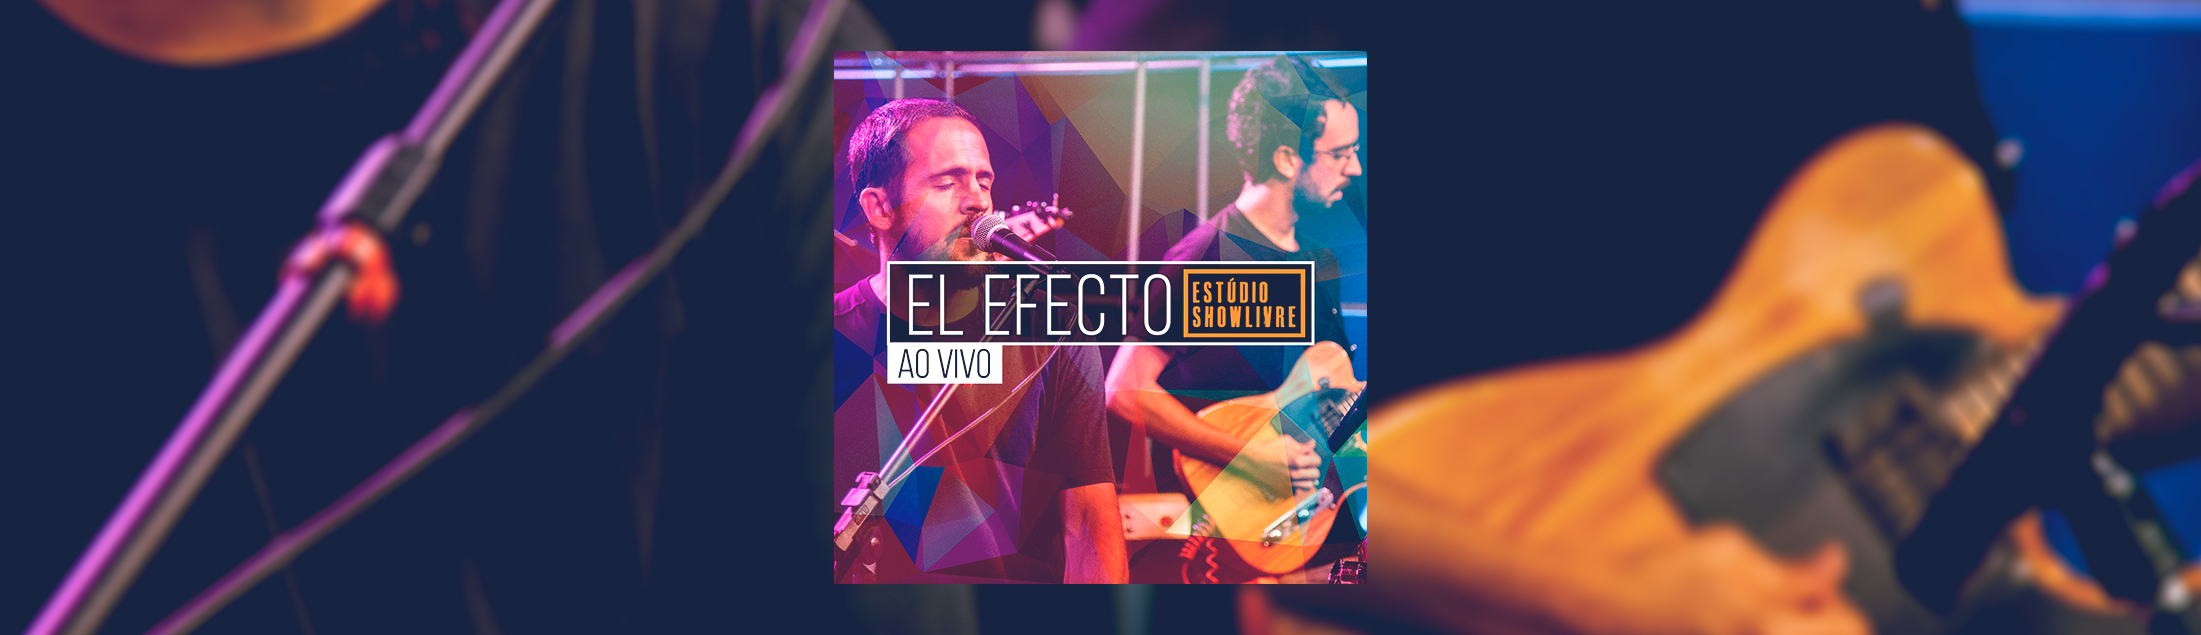 El Efecto lança disco ao vivo gravado no Estúdio Showlivre